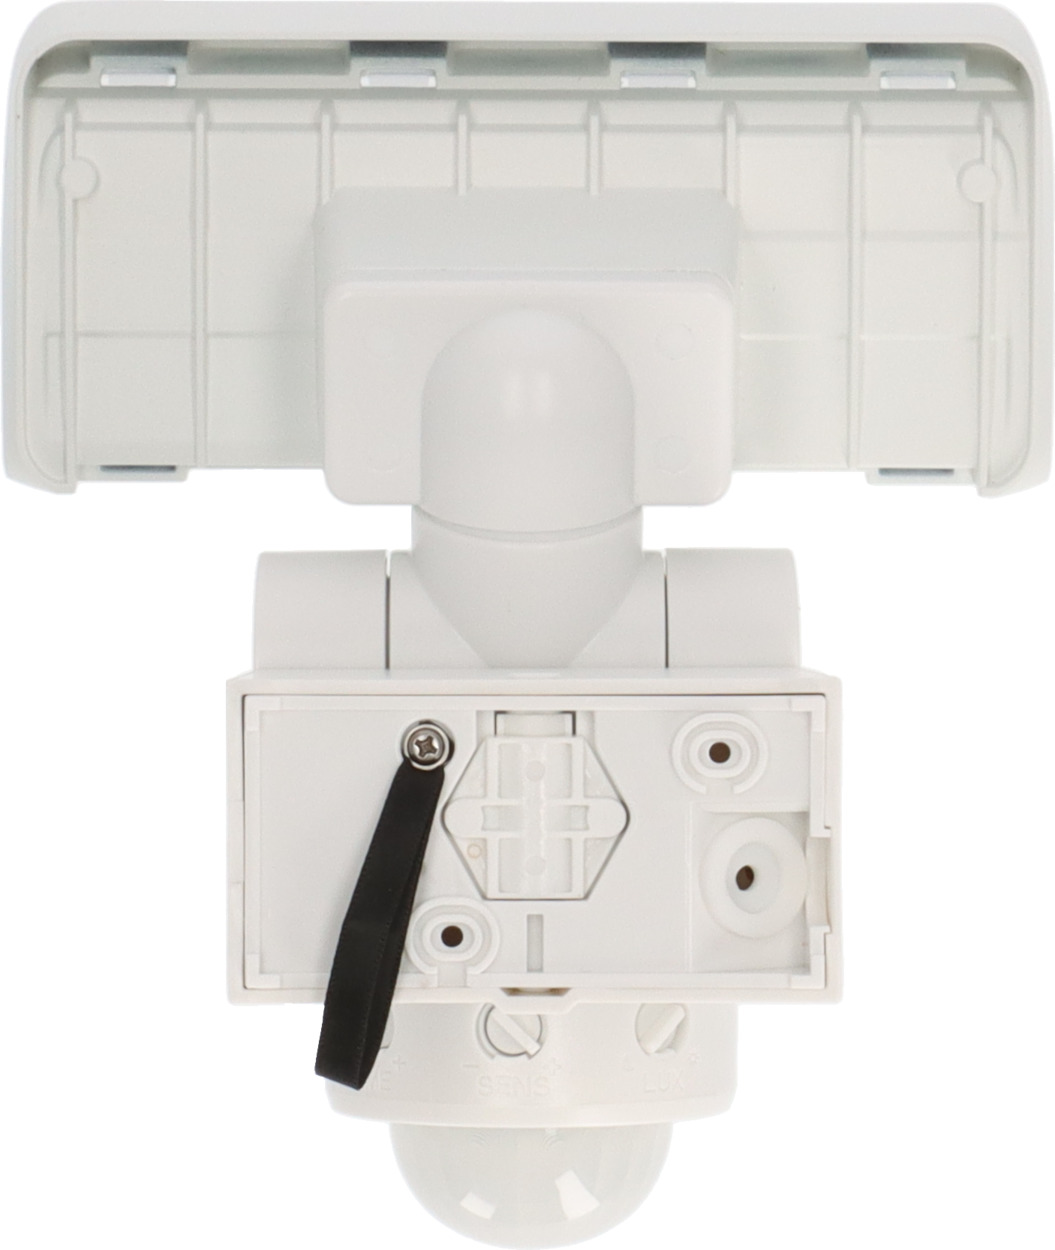 LED Strahler weiß 1680lm, | Bewegungsmelder, WS brennenstuhl® mit WP 2050 IP44